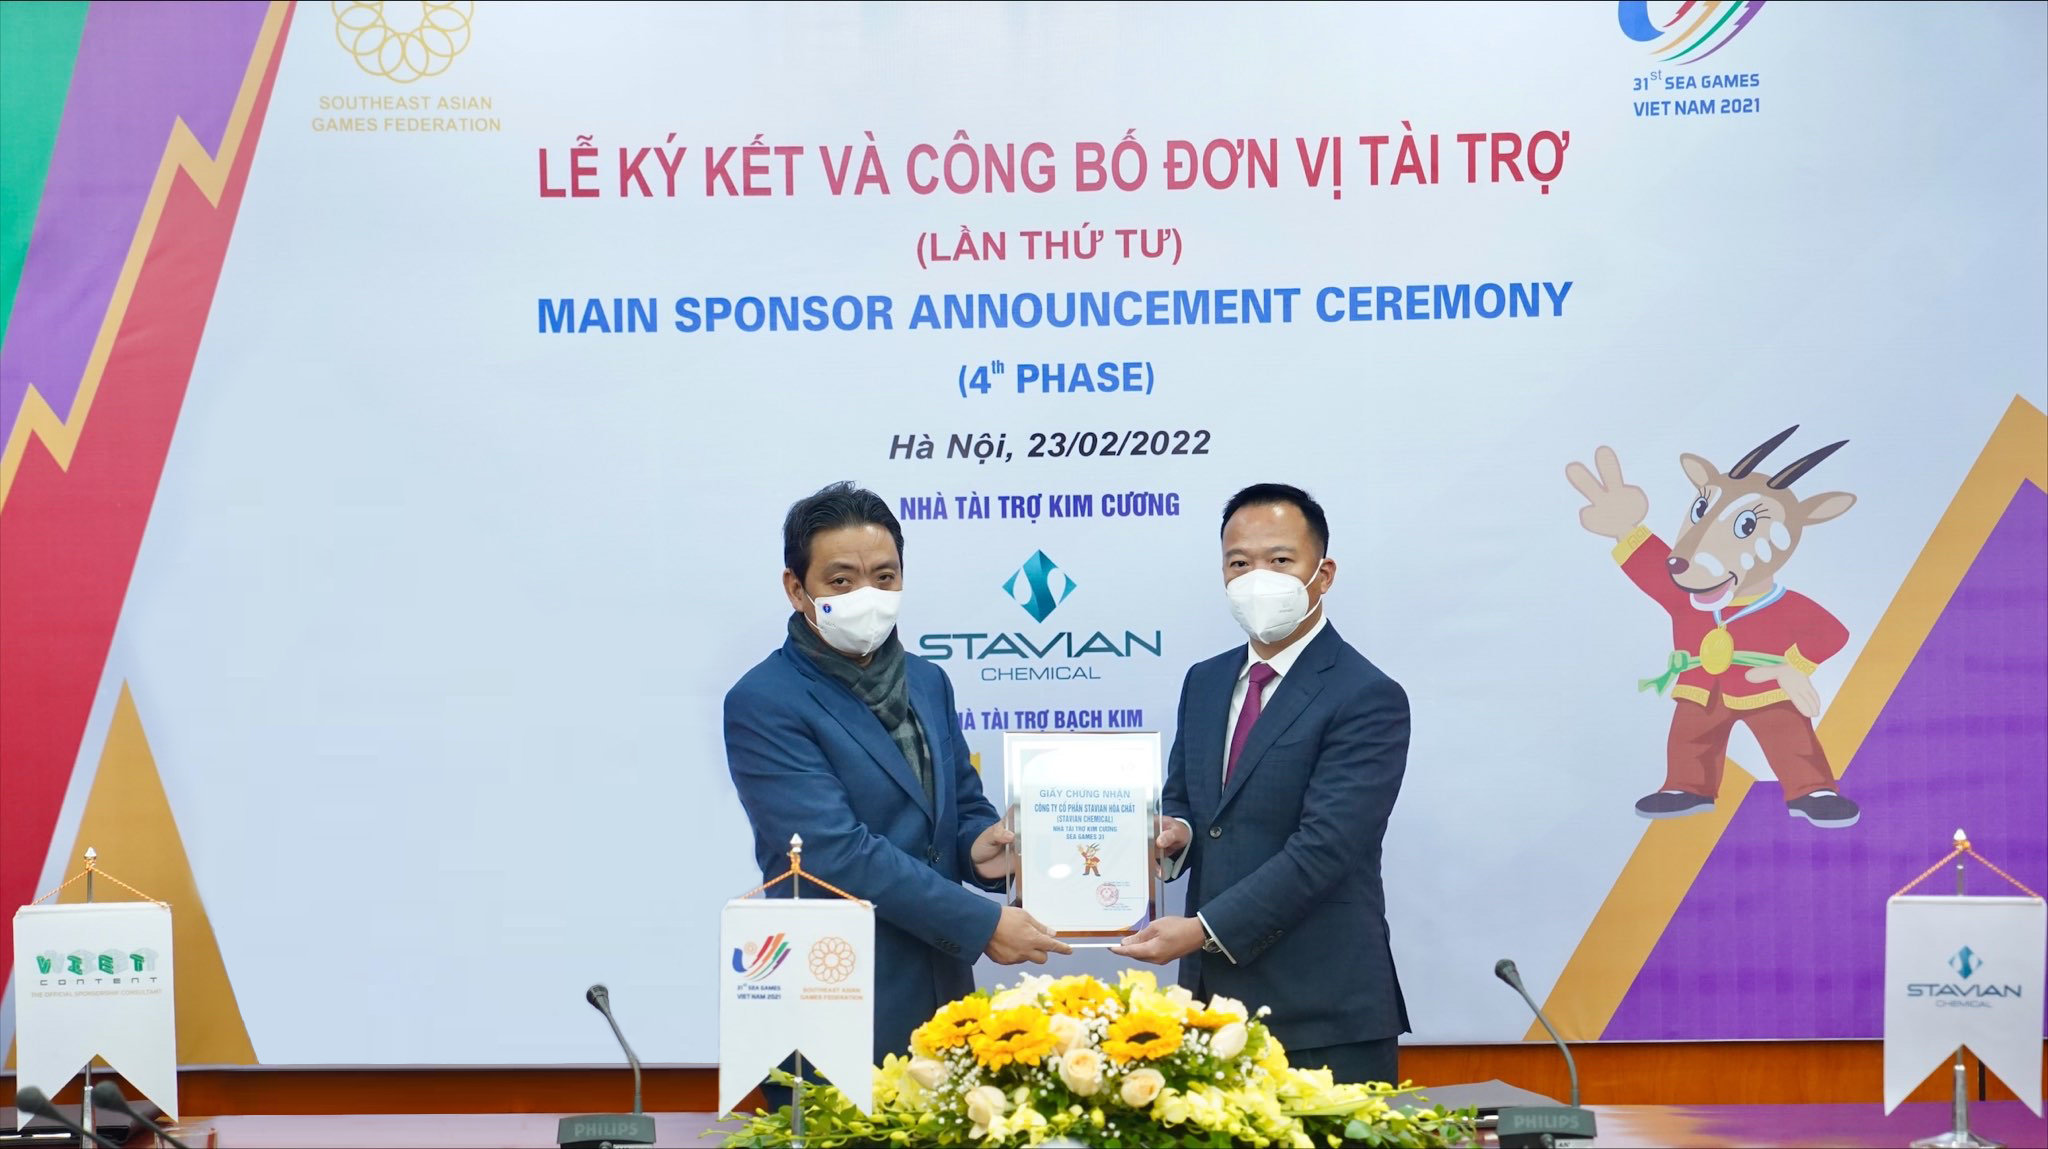 Ông Đinh Đức Thắng - Chủ tịch HĐQT Công ty Cổ phần Stavian Hóa chất nhận chứng nhận Nhà tài trợ Kim cương SEA Games 31.